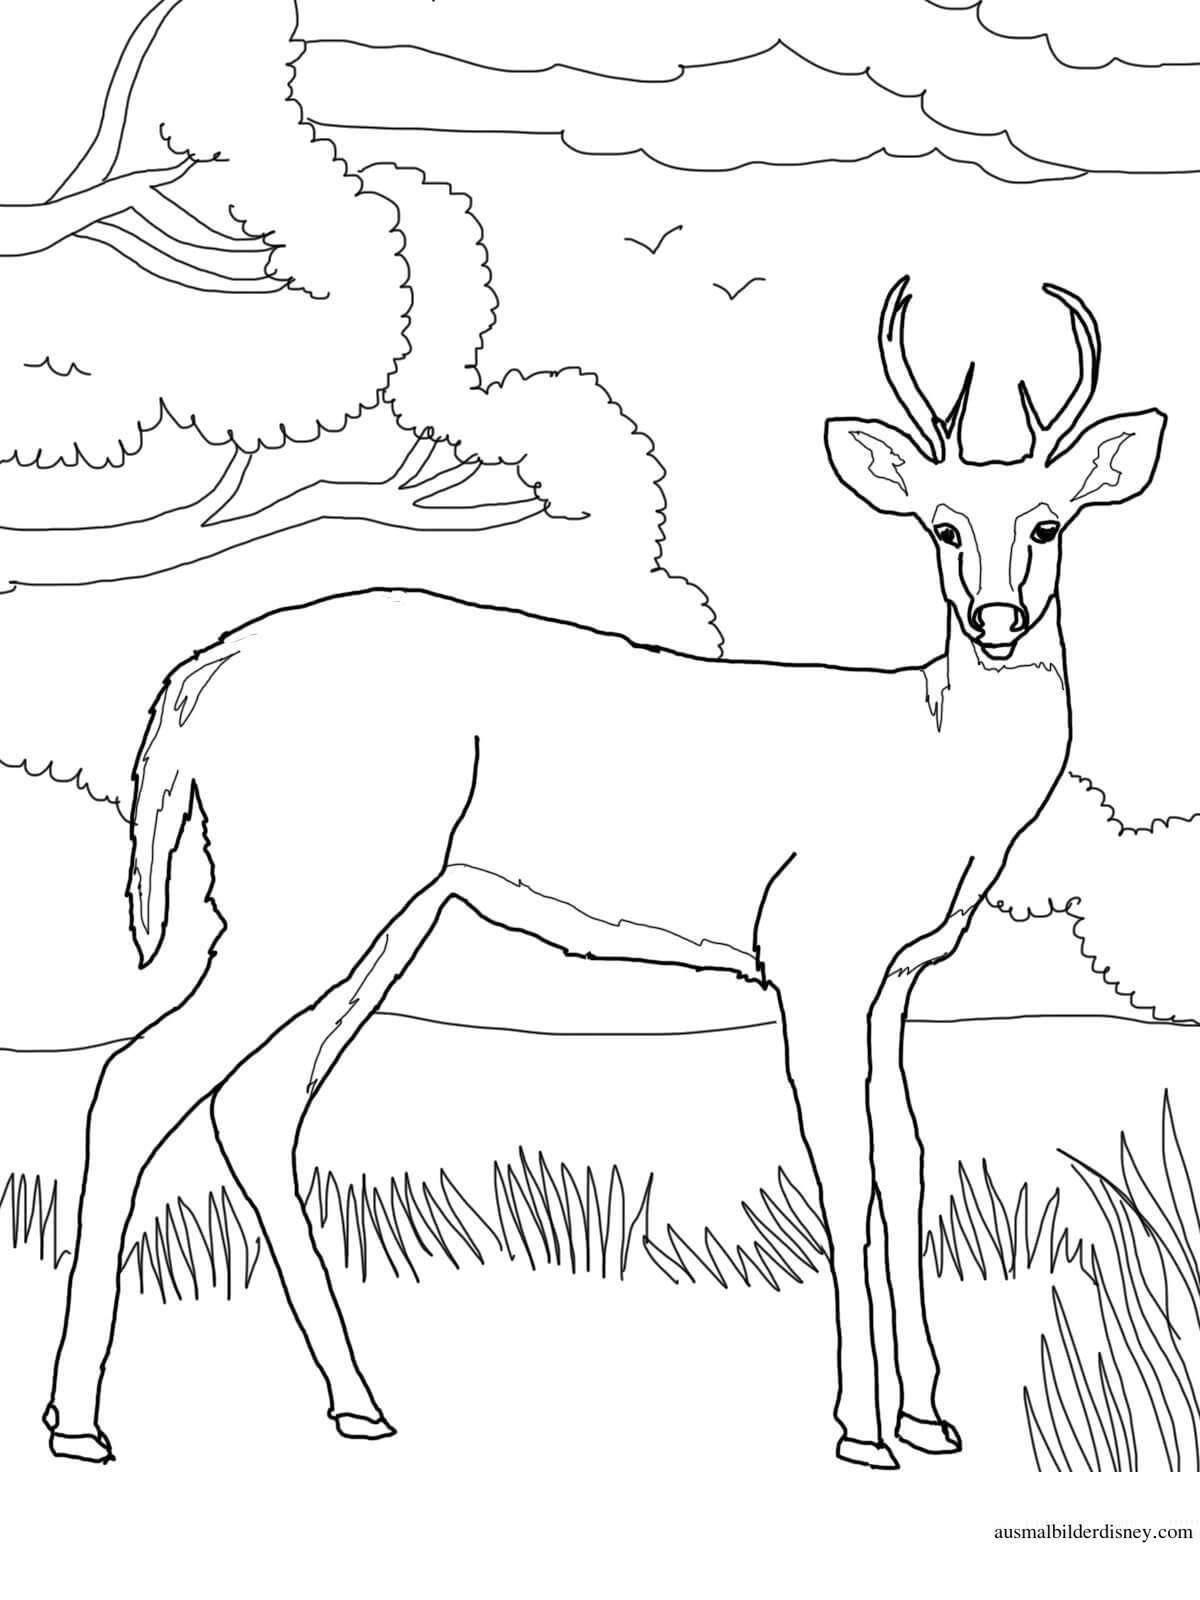 Balanced siberian roe deer coloring book